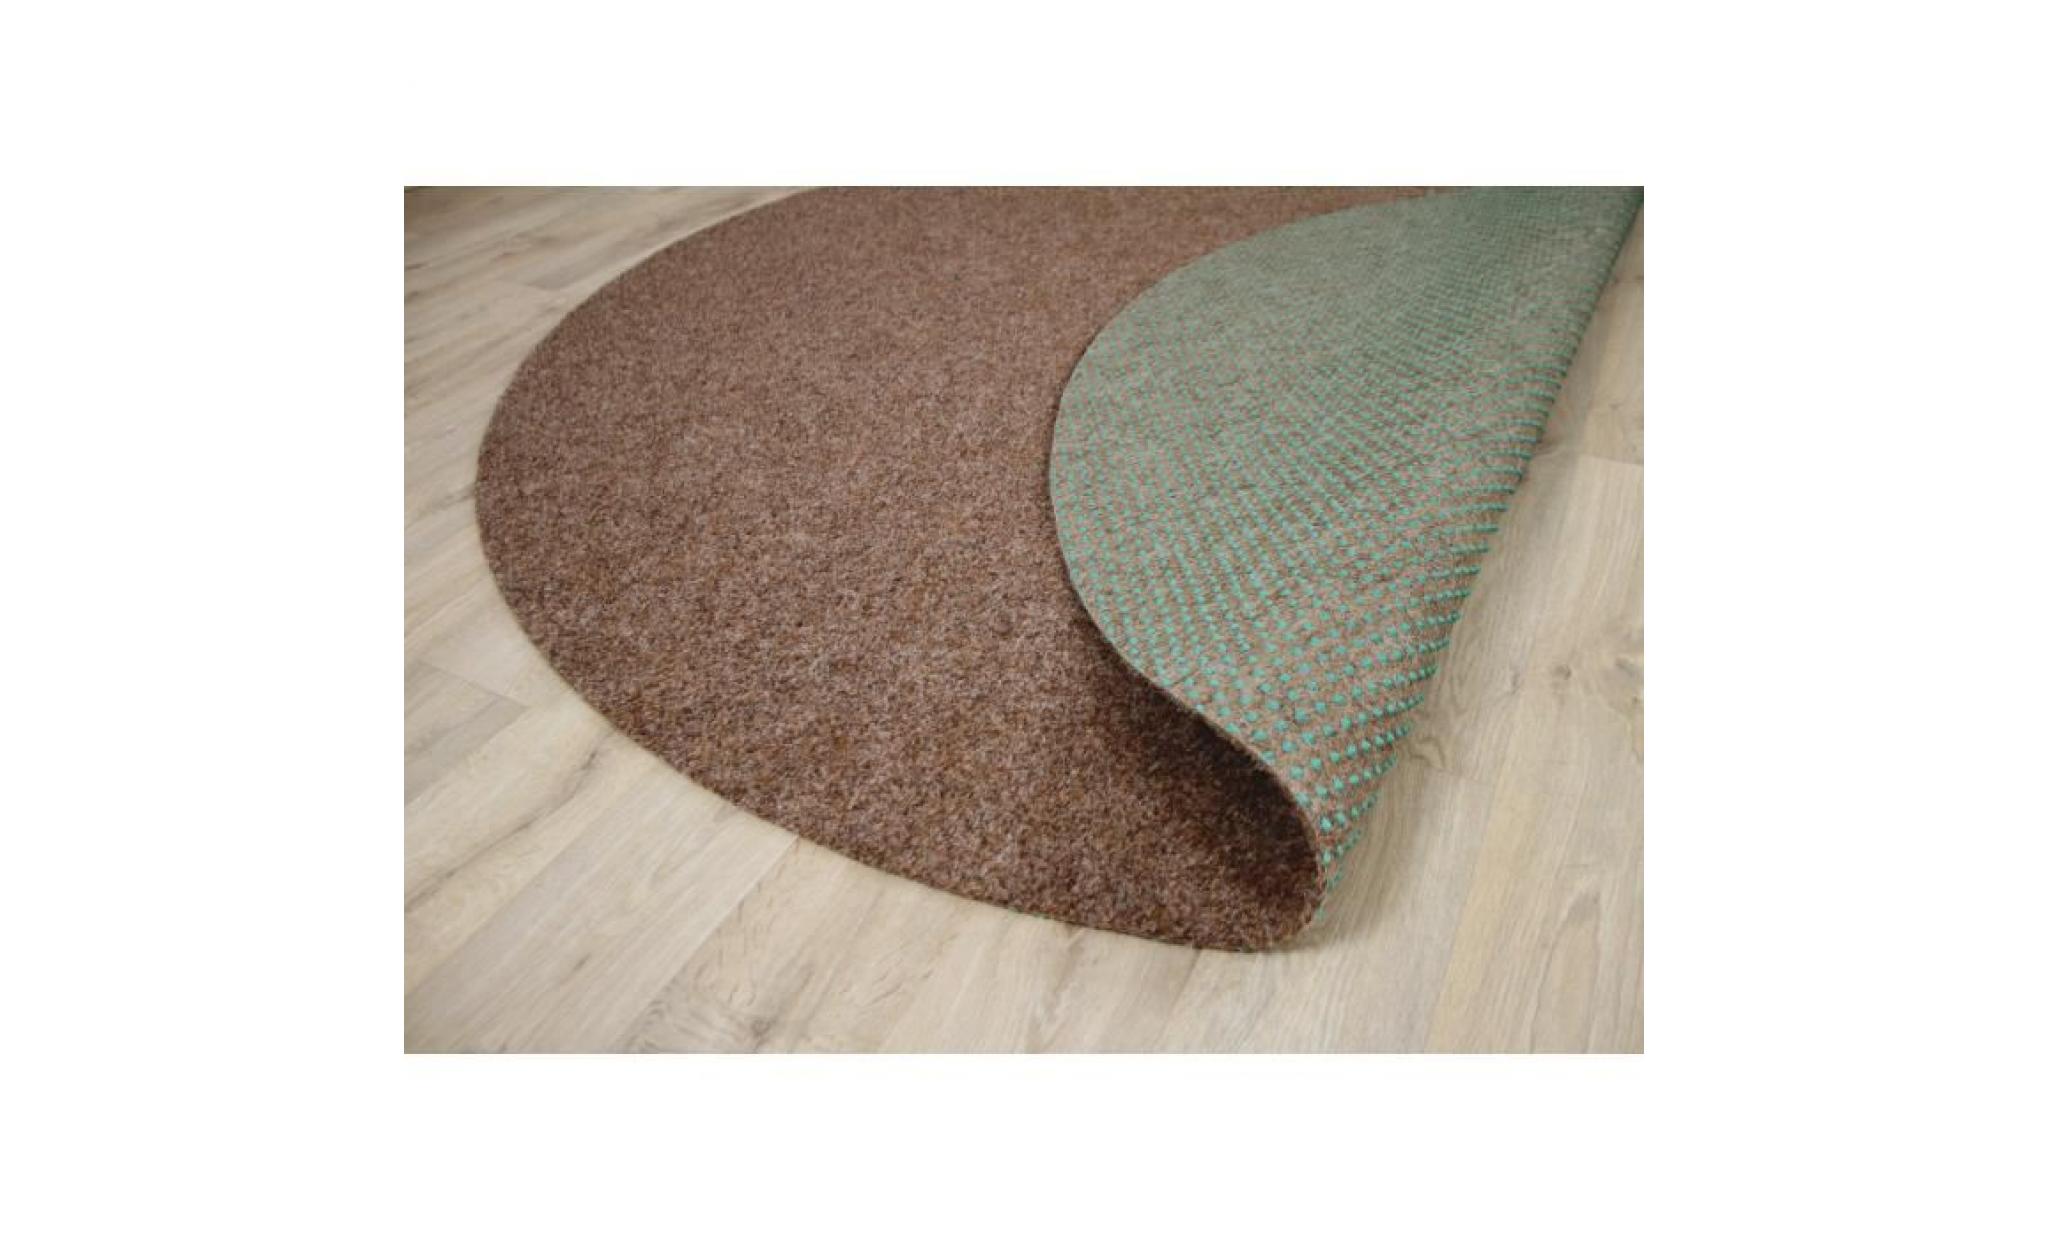 kingston   tapis type gazon artificiel rond – pour jardin, terrasse, balcon   anthracite   13 tailles disponibles [100 cm rond] pas cher